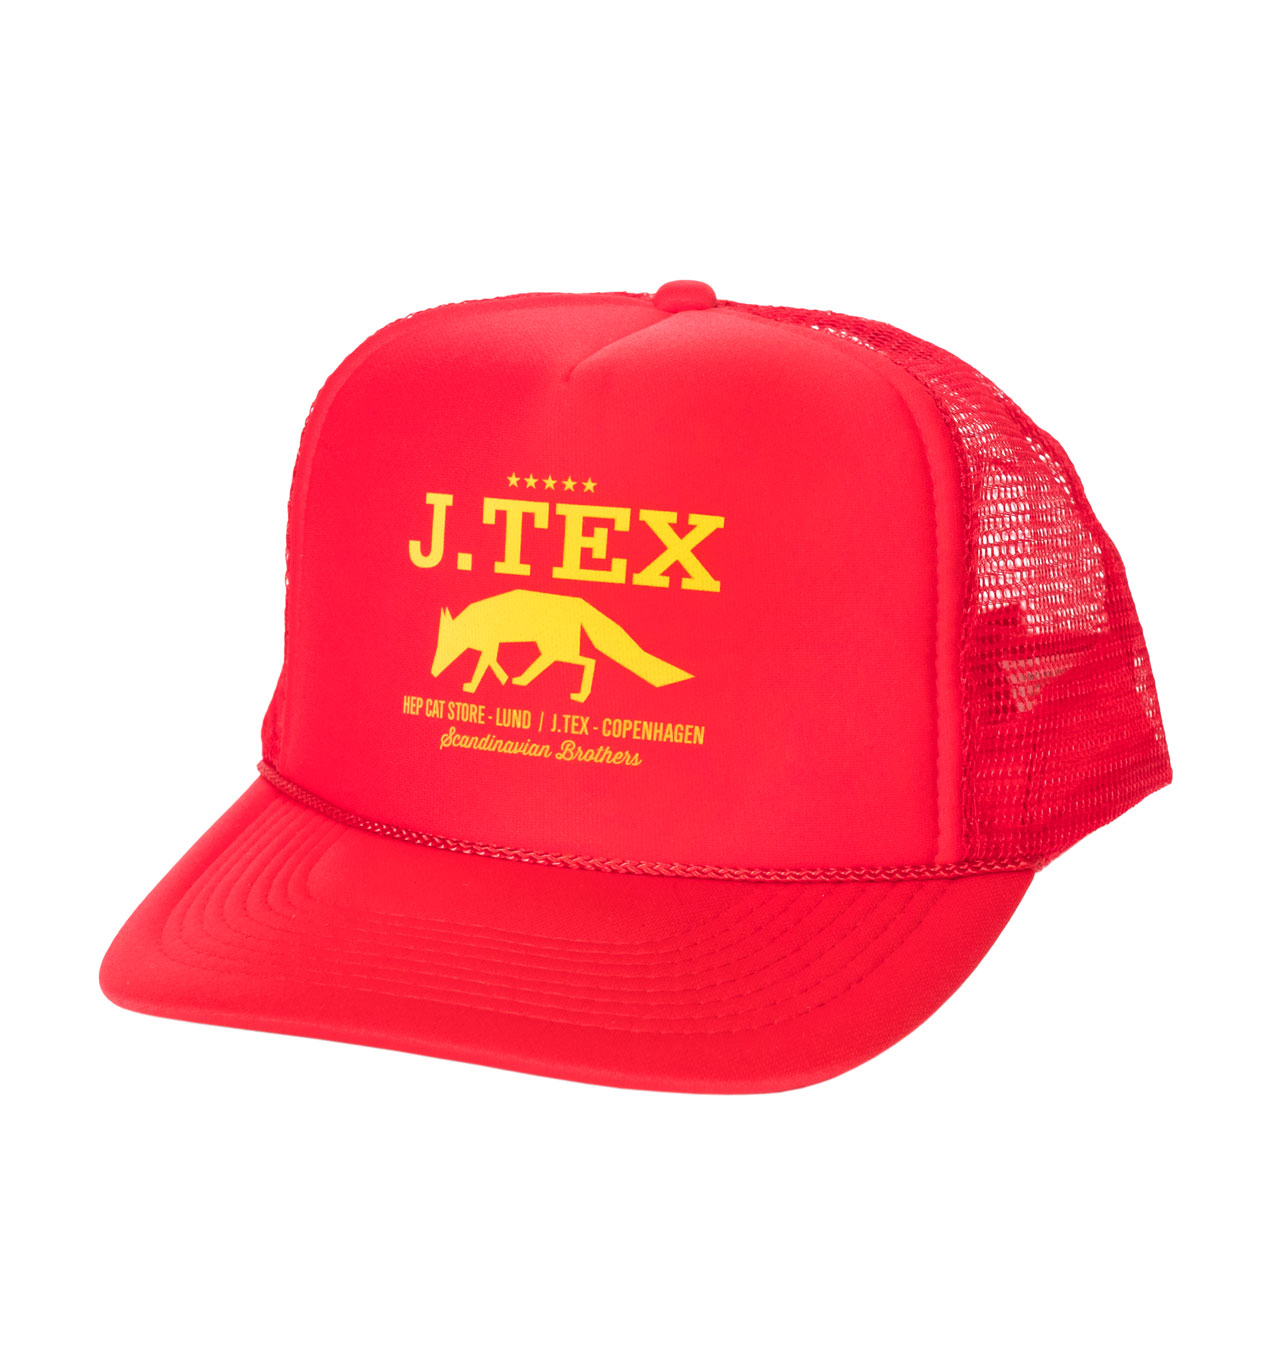 J Tex - Scandinavian Brothers Trucker Cap - Red